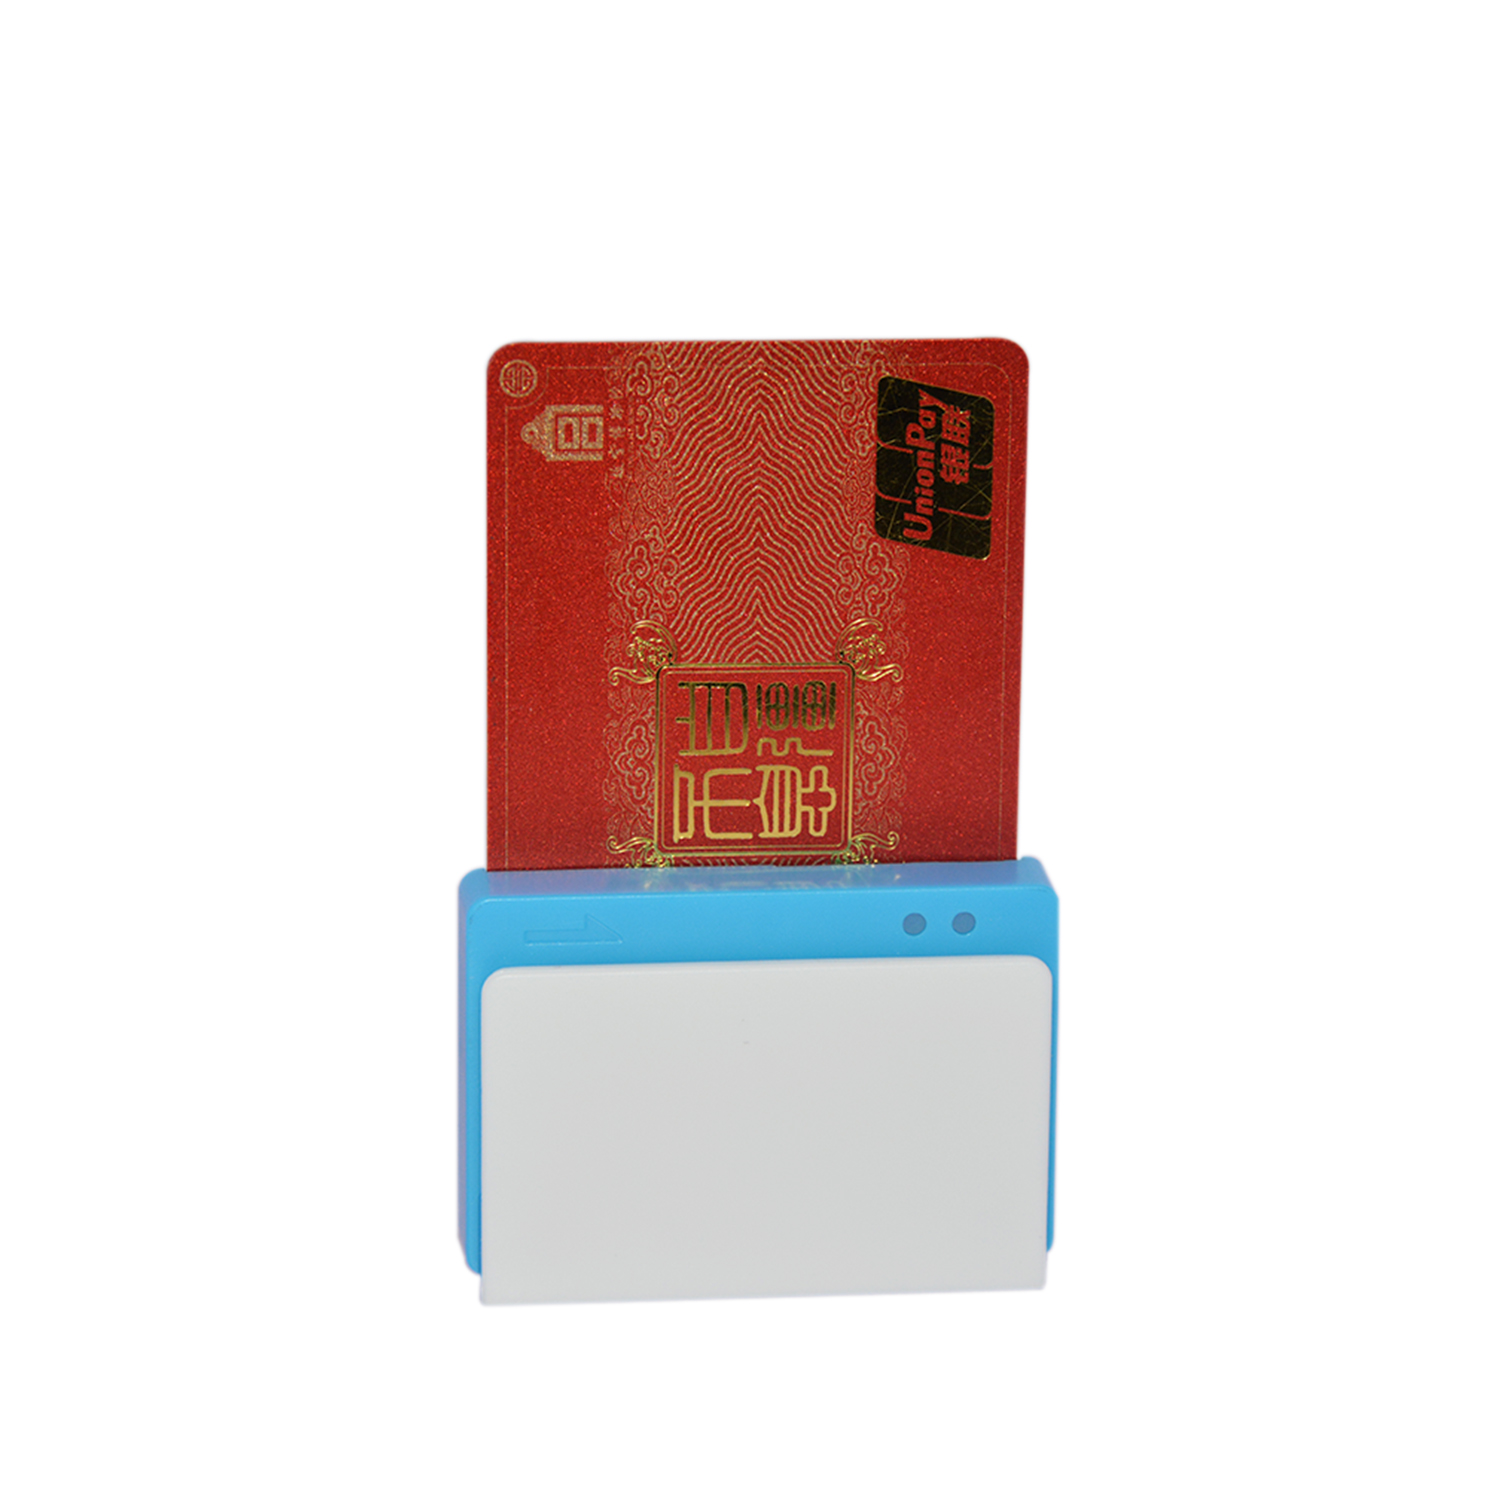 Горячая продажа Bluetooth Android IOS Mobile Card Reader для мобильных платежей MPR100